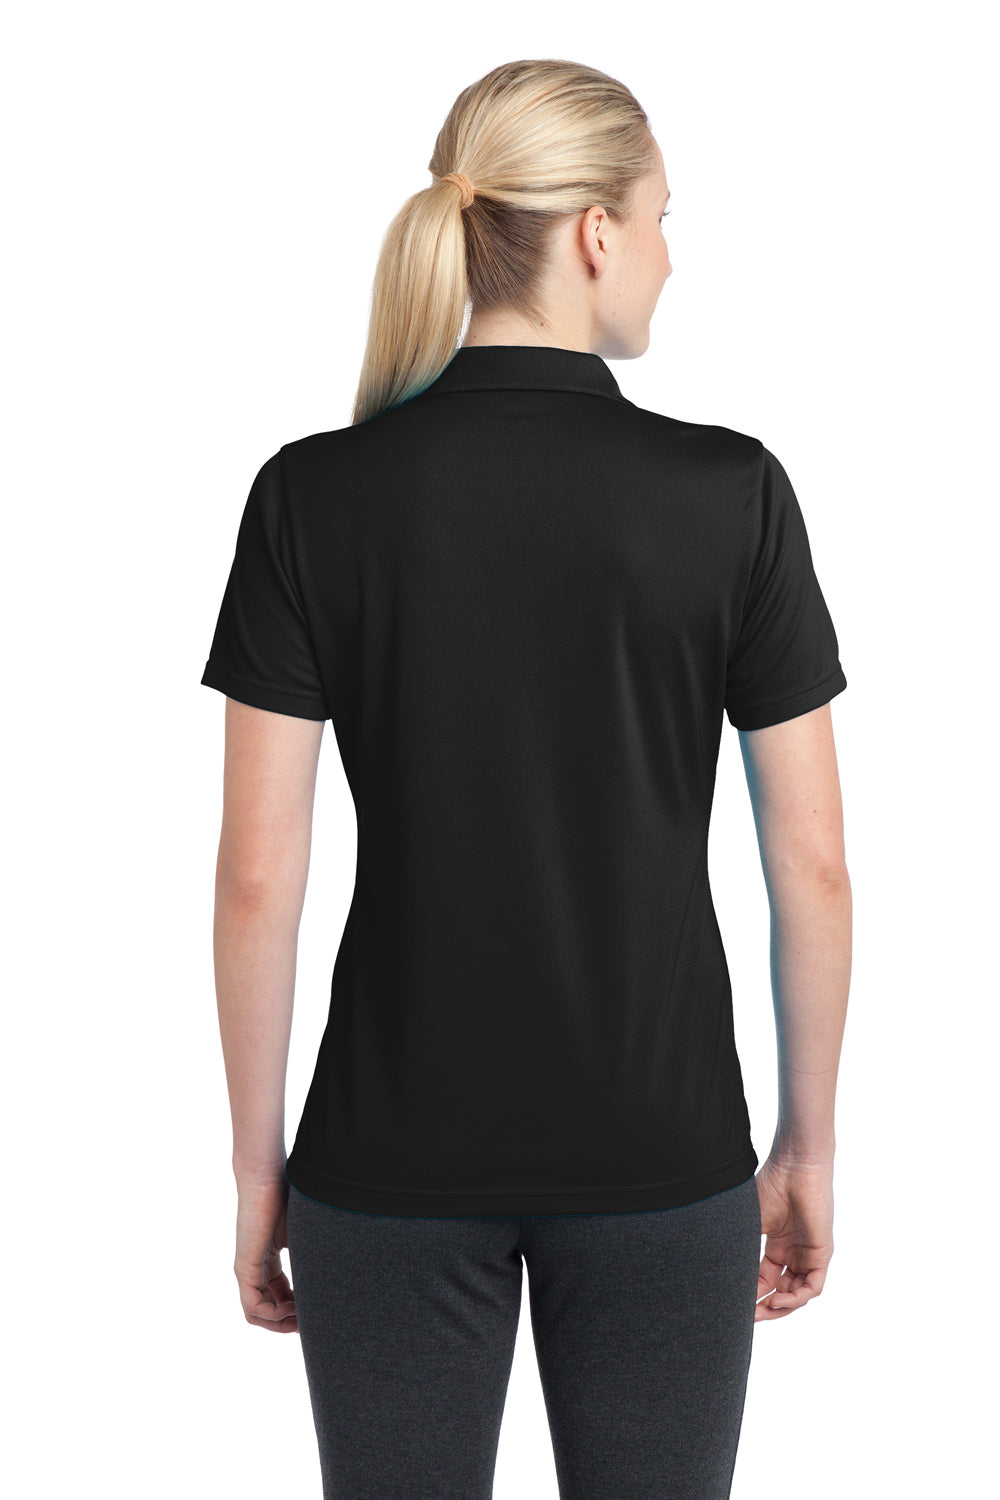 Sport-Tek LST680 Womens Micro-Mesh Moisture Wicking Short Sleeve Polo Shirt Black Back